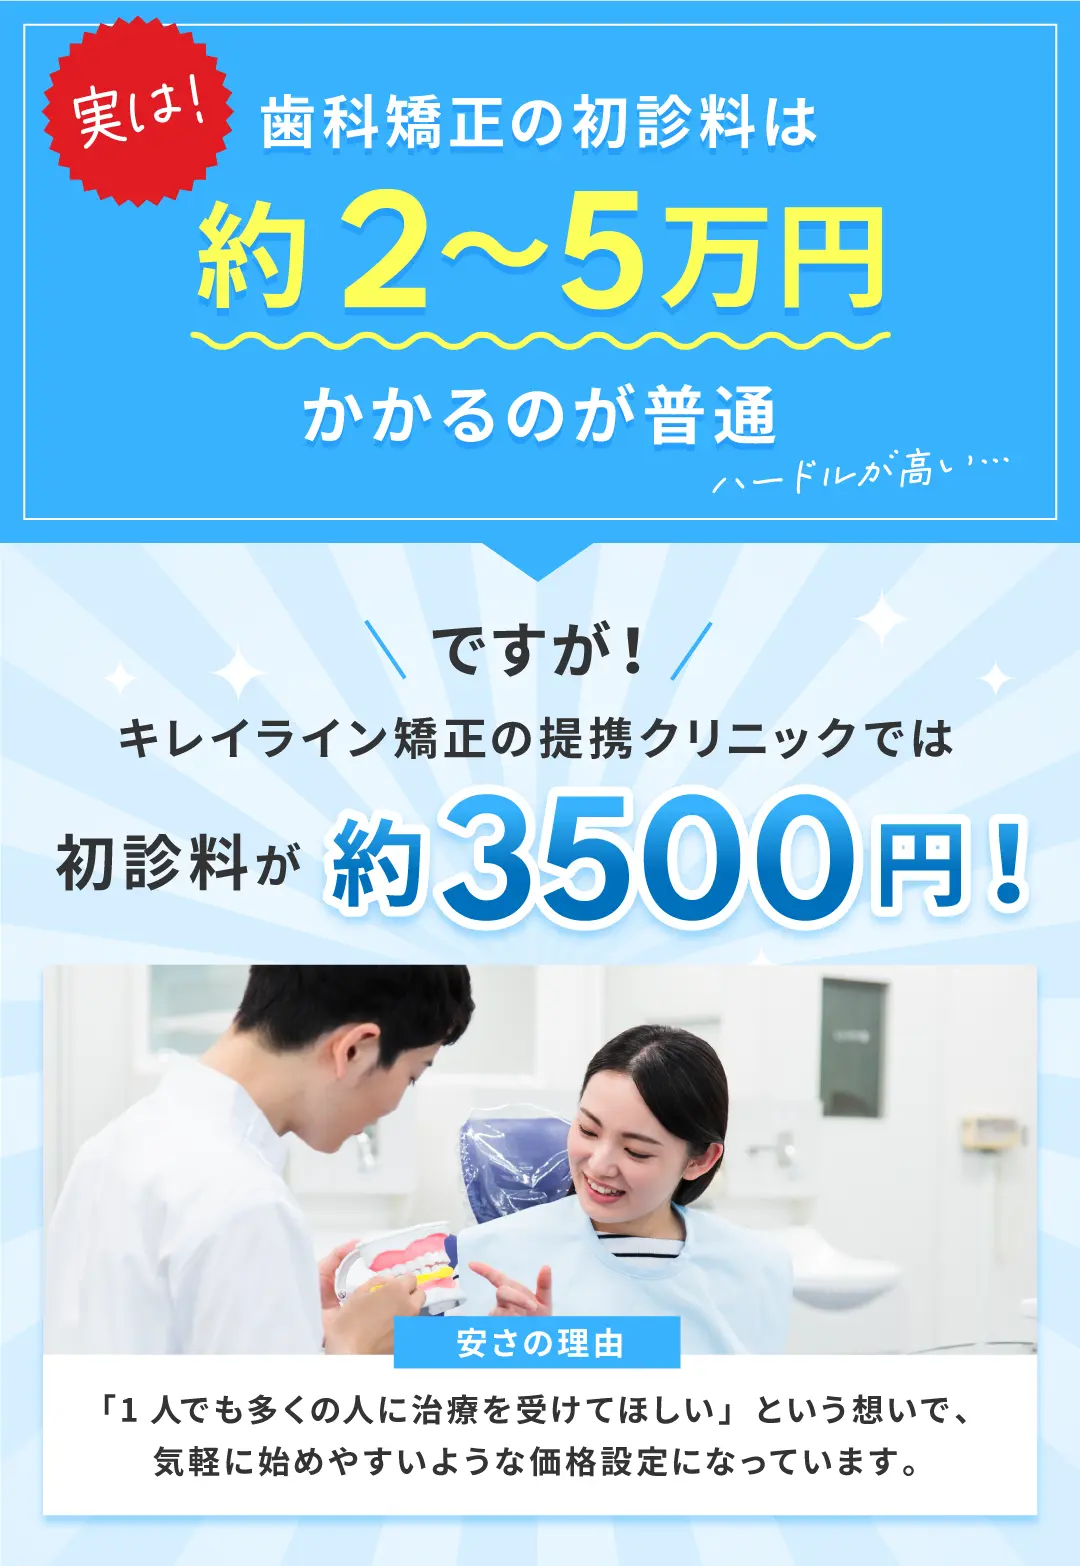 実は！歯科矯正の初診料は約2～5万円かかるのが普通ですが！
キレイライン矯正の提携クリニックでは初診料が約3500円！安さの理由は「1人でも多くの人に治療を受けてほしい」という想いで、気軽に始めやすいような価格設定になっています。